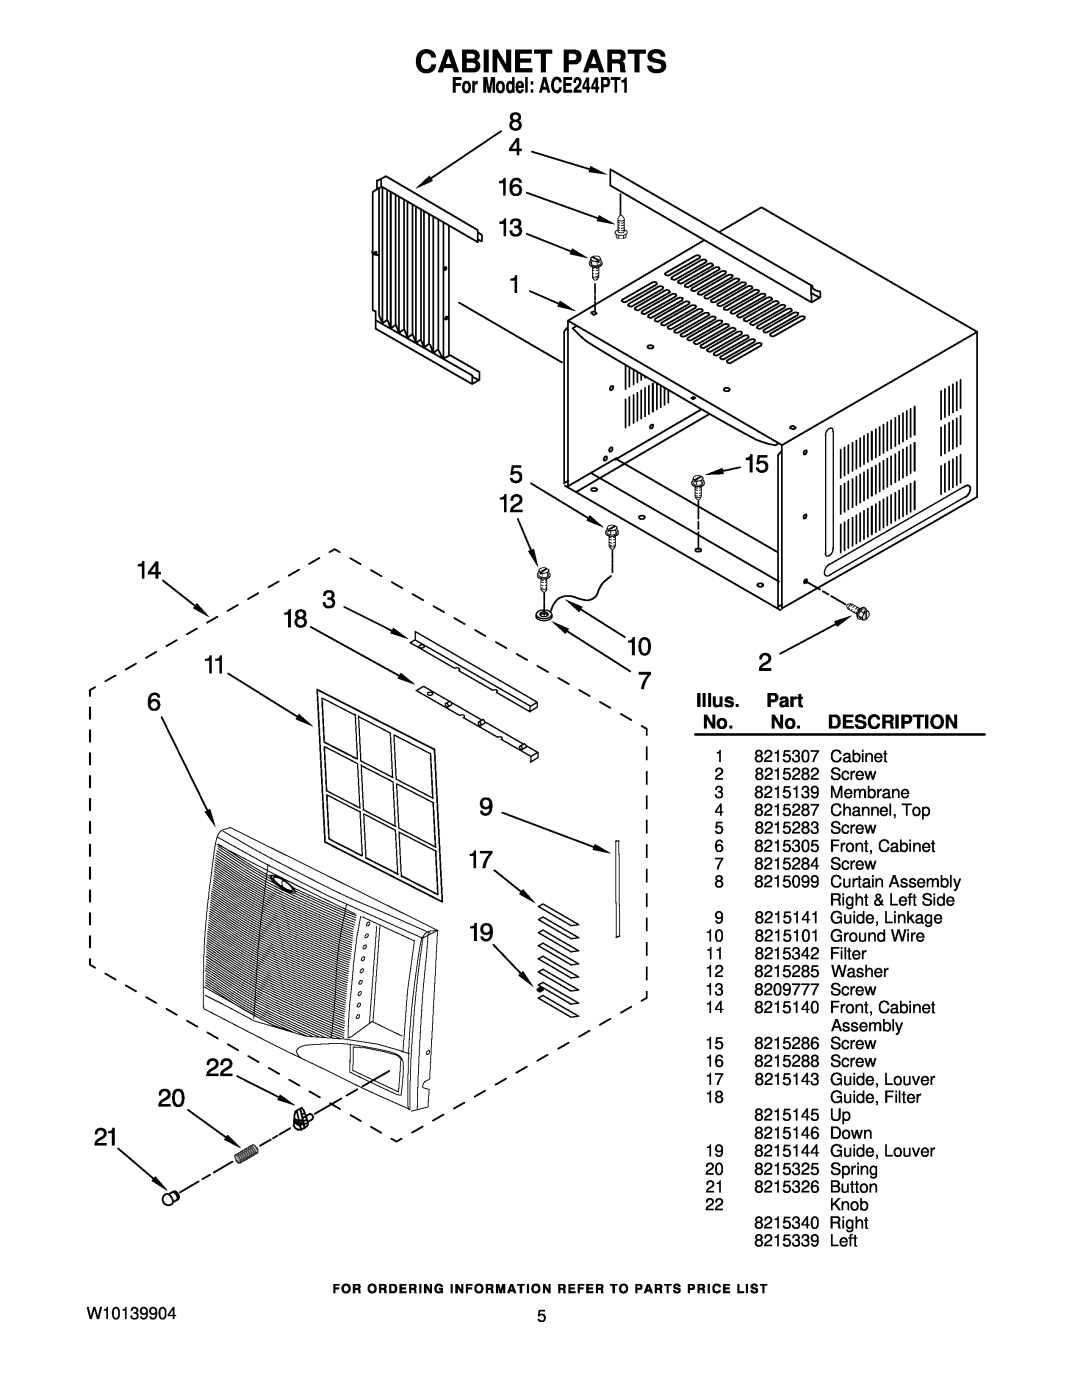 Whirlpool manual Cabinet Parts, Illus, Description, For Model ACE244PT1 